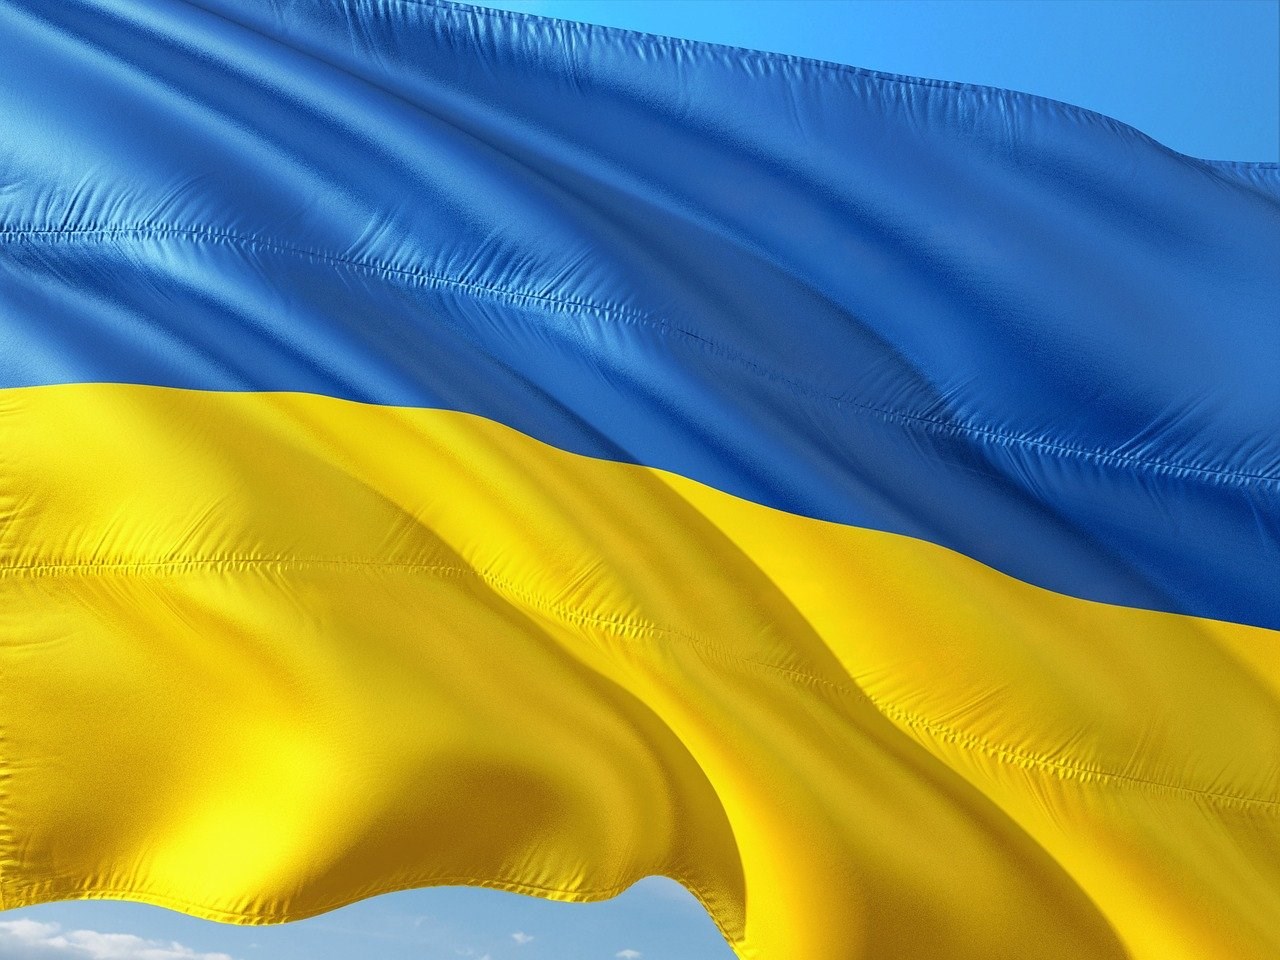 KRIEG IN DER UKRAINE – WIR SEHEN ONLINE: Druck auf Russland über SWIFT und die Zentralbank, nukleare Bedrohung